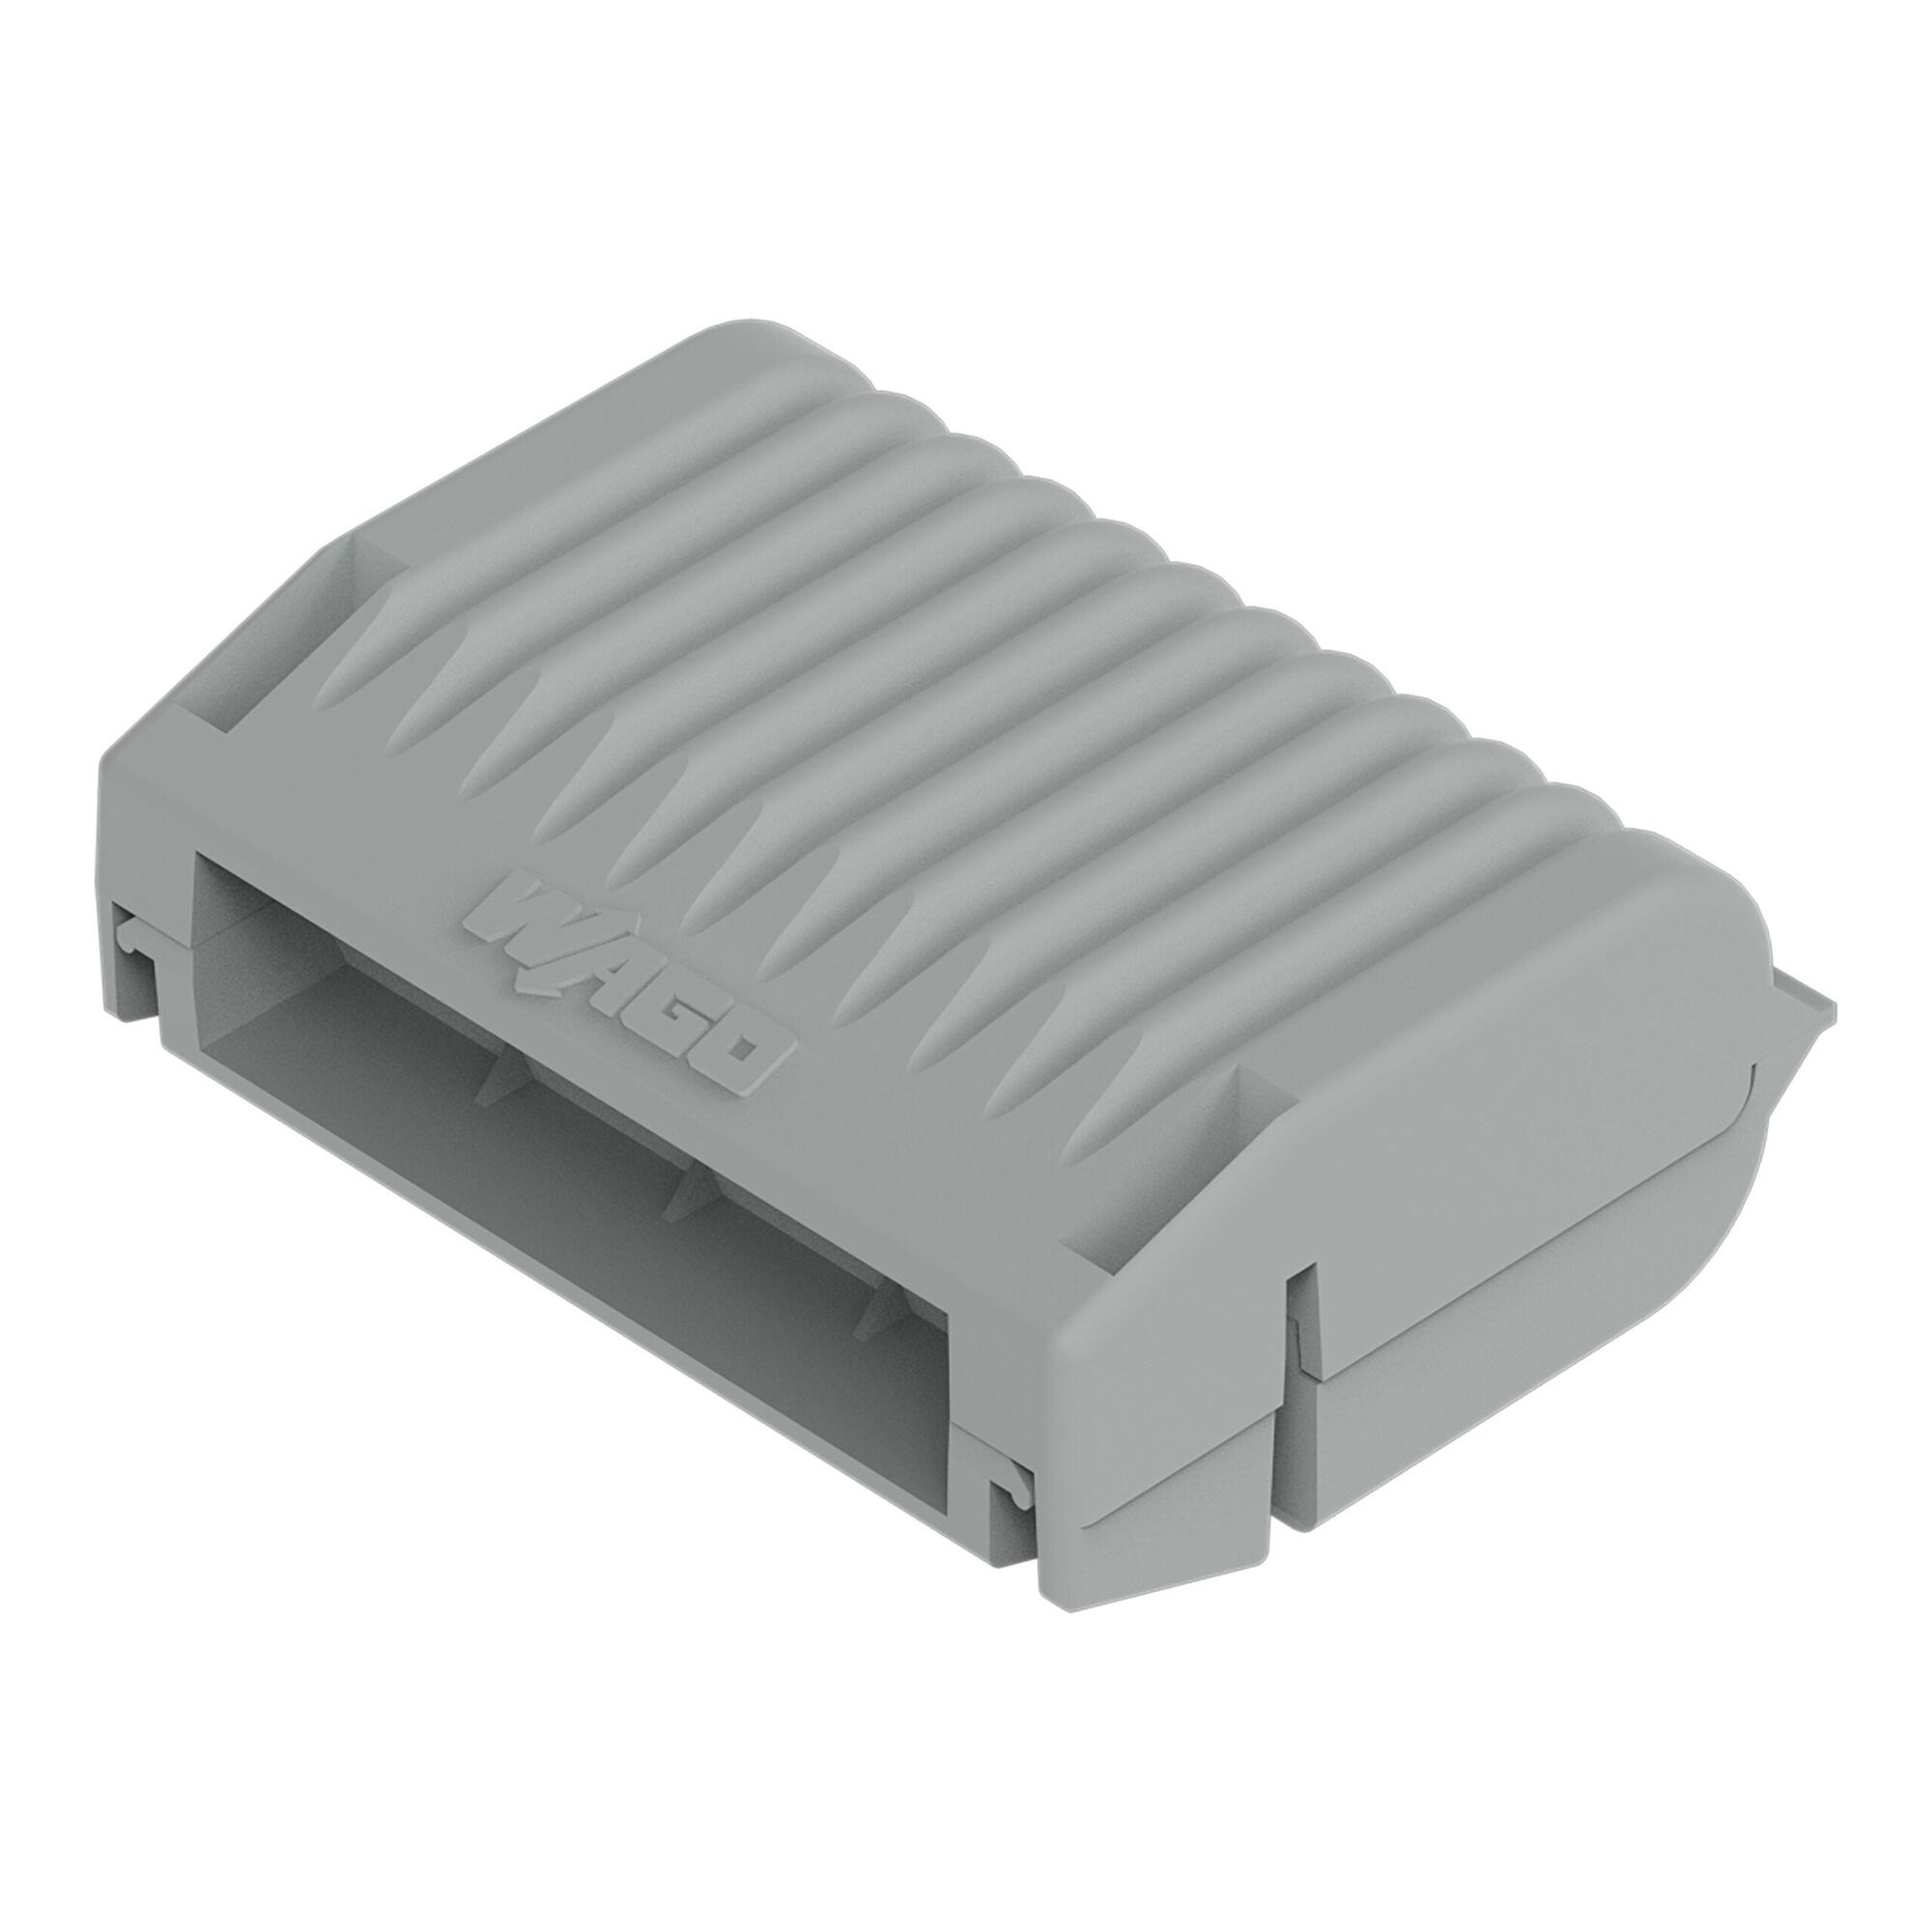 胶盒; 分支; 适于电缆; 带有凝胶; 221, 2x73 系列; 最大4 mm²连接器; 不带导线连接器; Size 2; 灰色